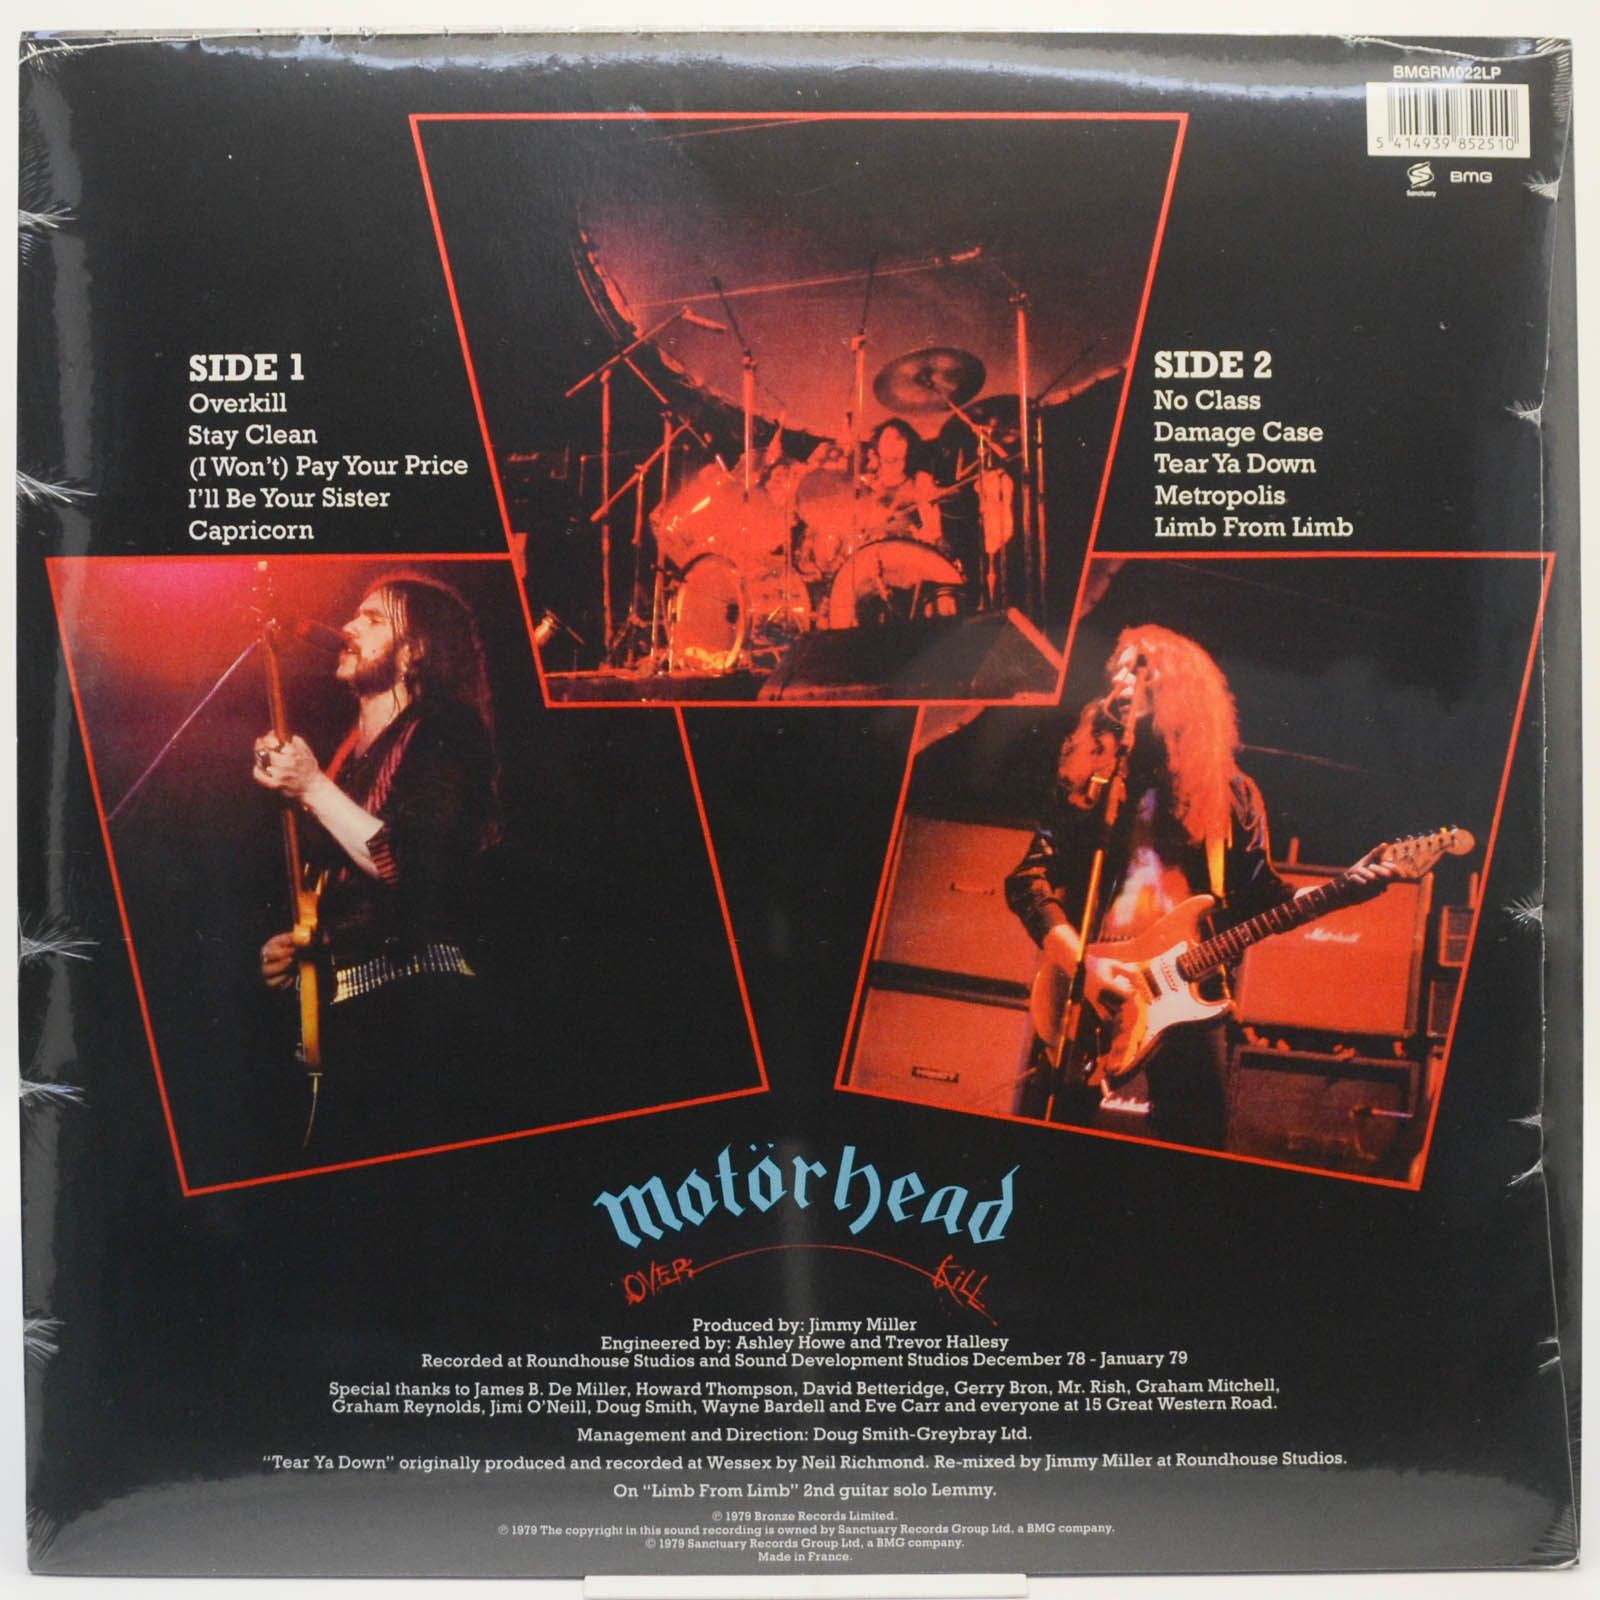 Motörhead — Overkill, 1979